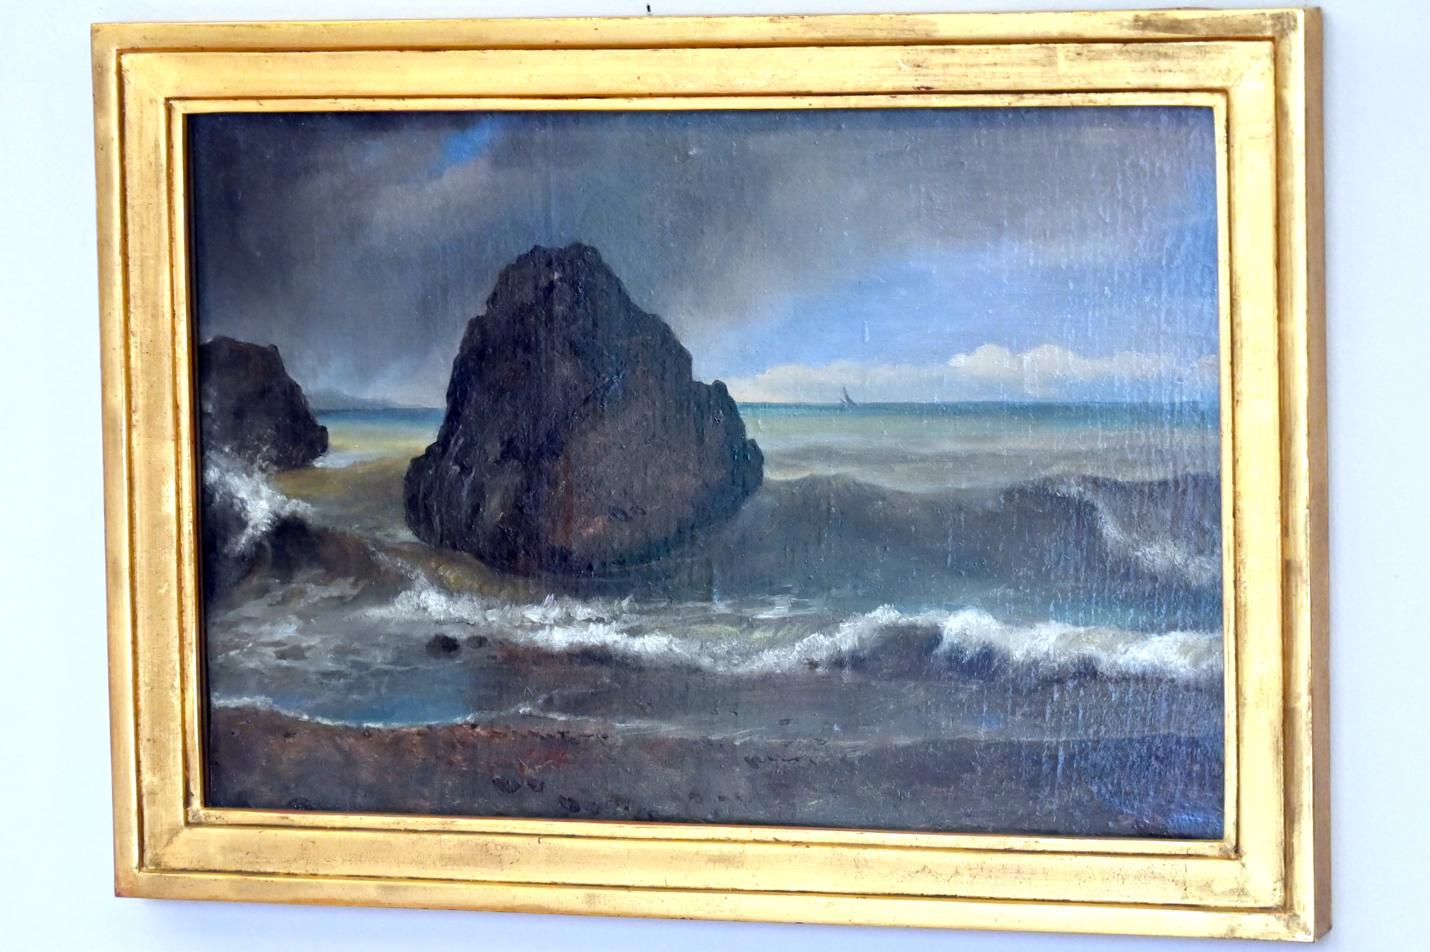 Achille Etna Michallon (1816–1822), Blick auf das Meer bei Salerno, Paris, Musée du Louvre, Saal 948, 1820, Bild 1/2